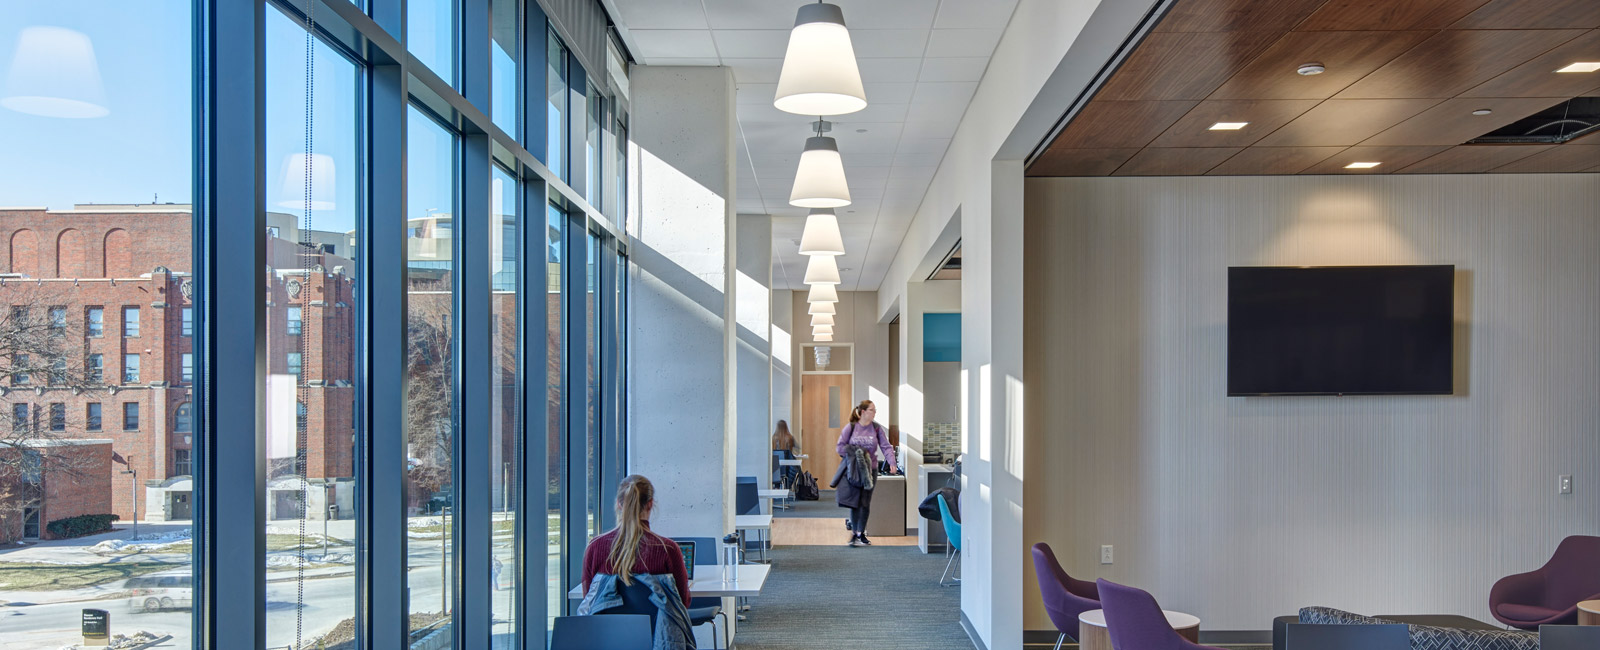 University of Iowa – College of Pharmacy Hallway